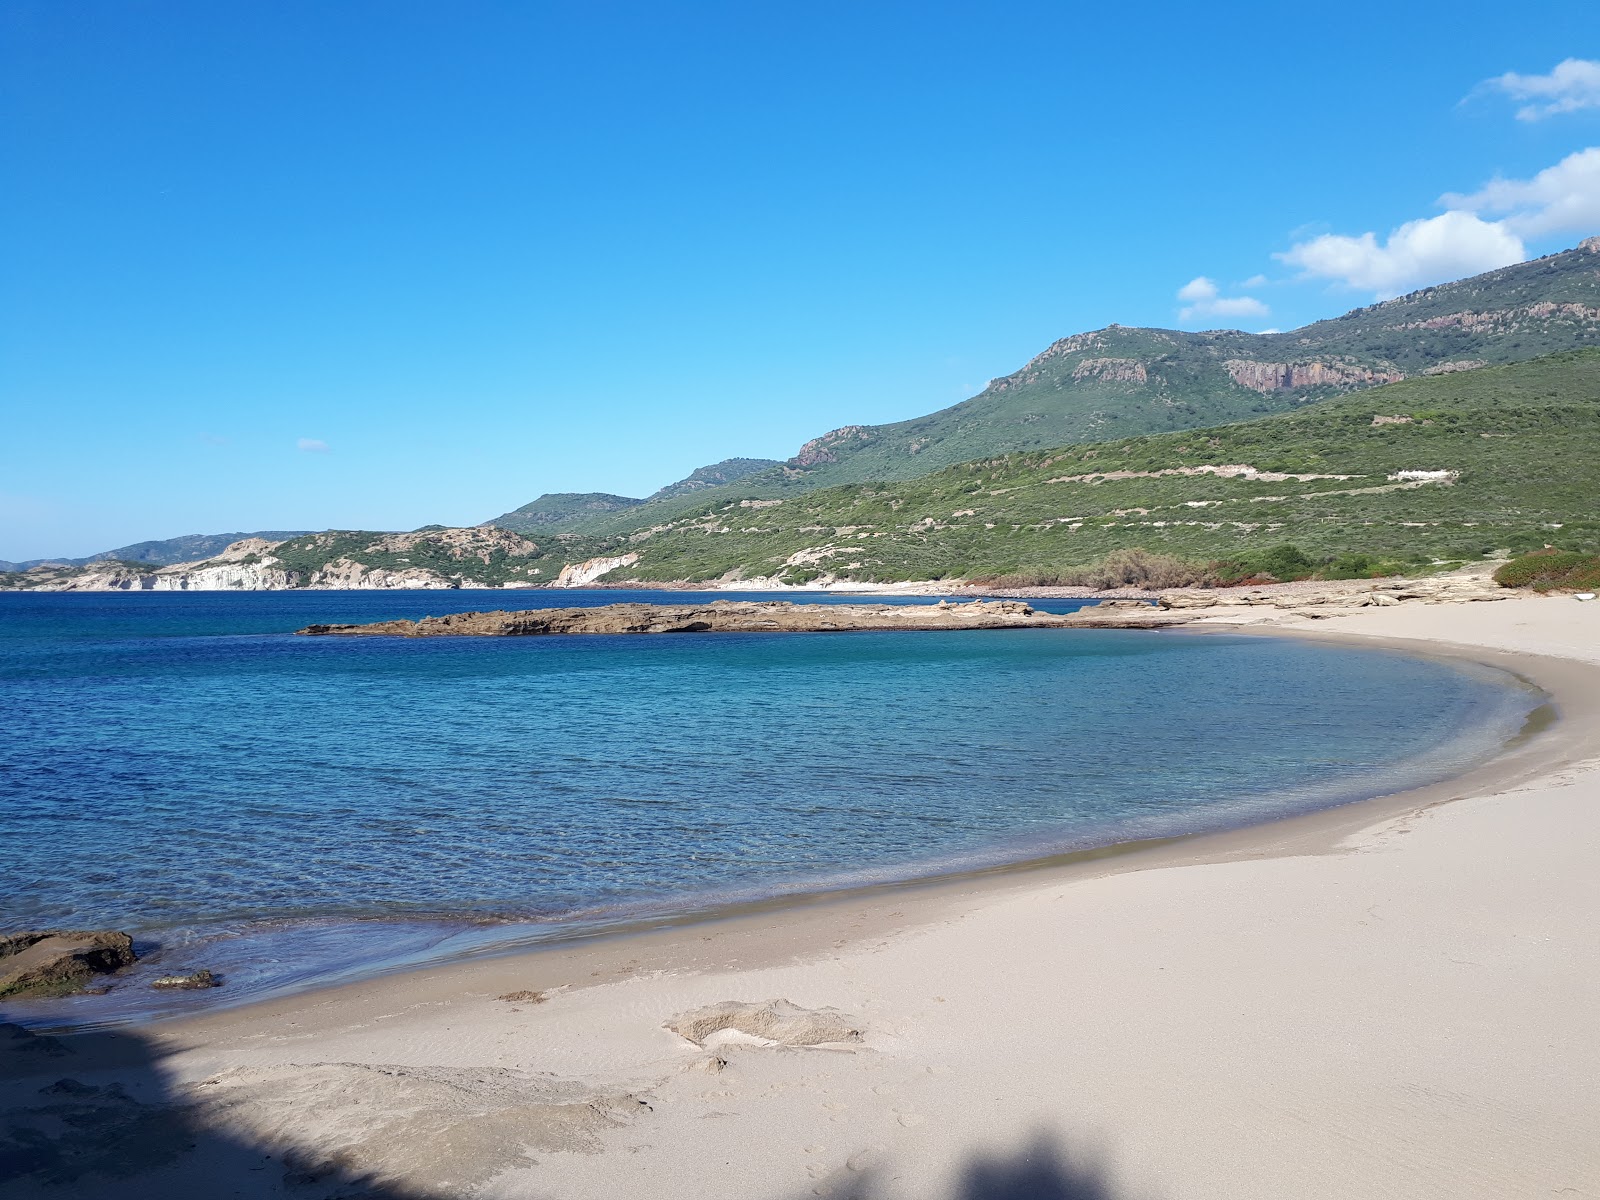 Spiaggia di S'Abba Druche的照片 具有部分干净级别的清洁度